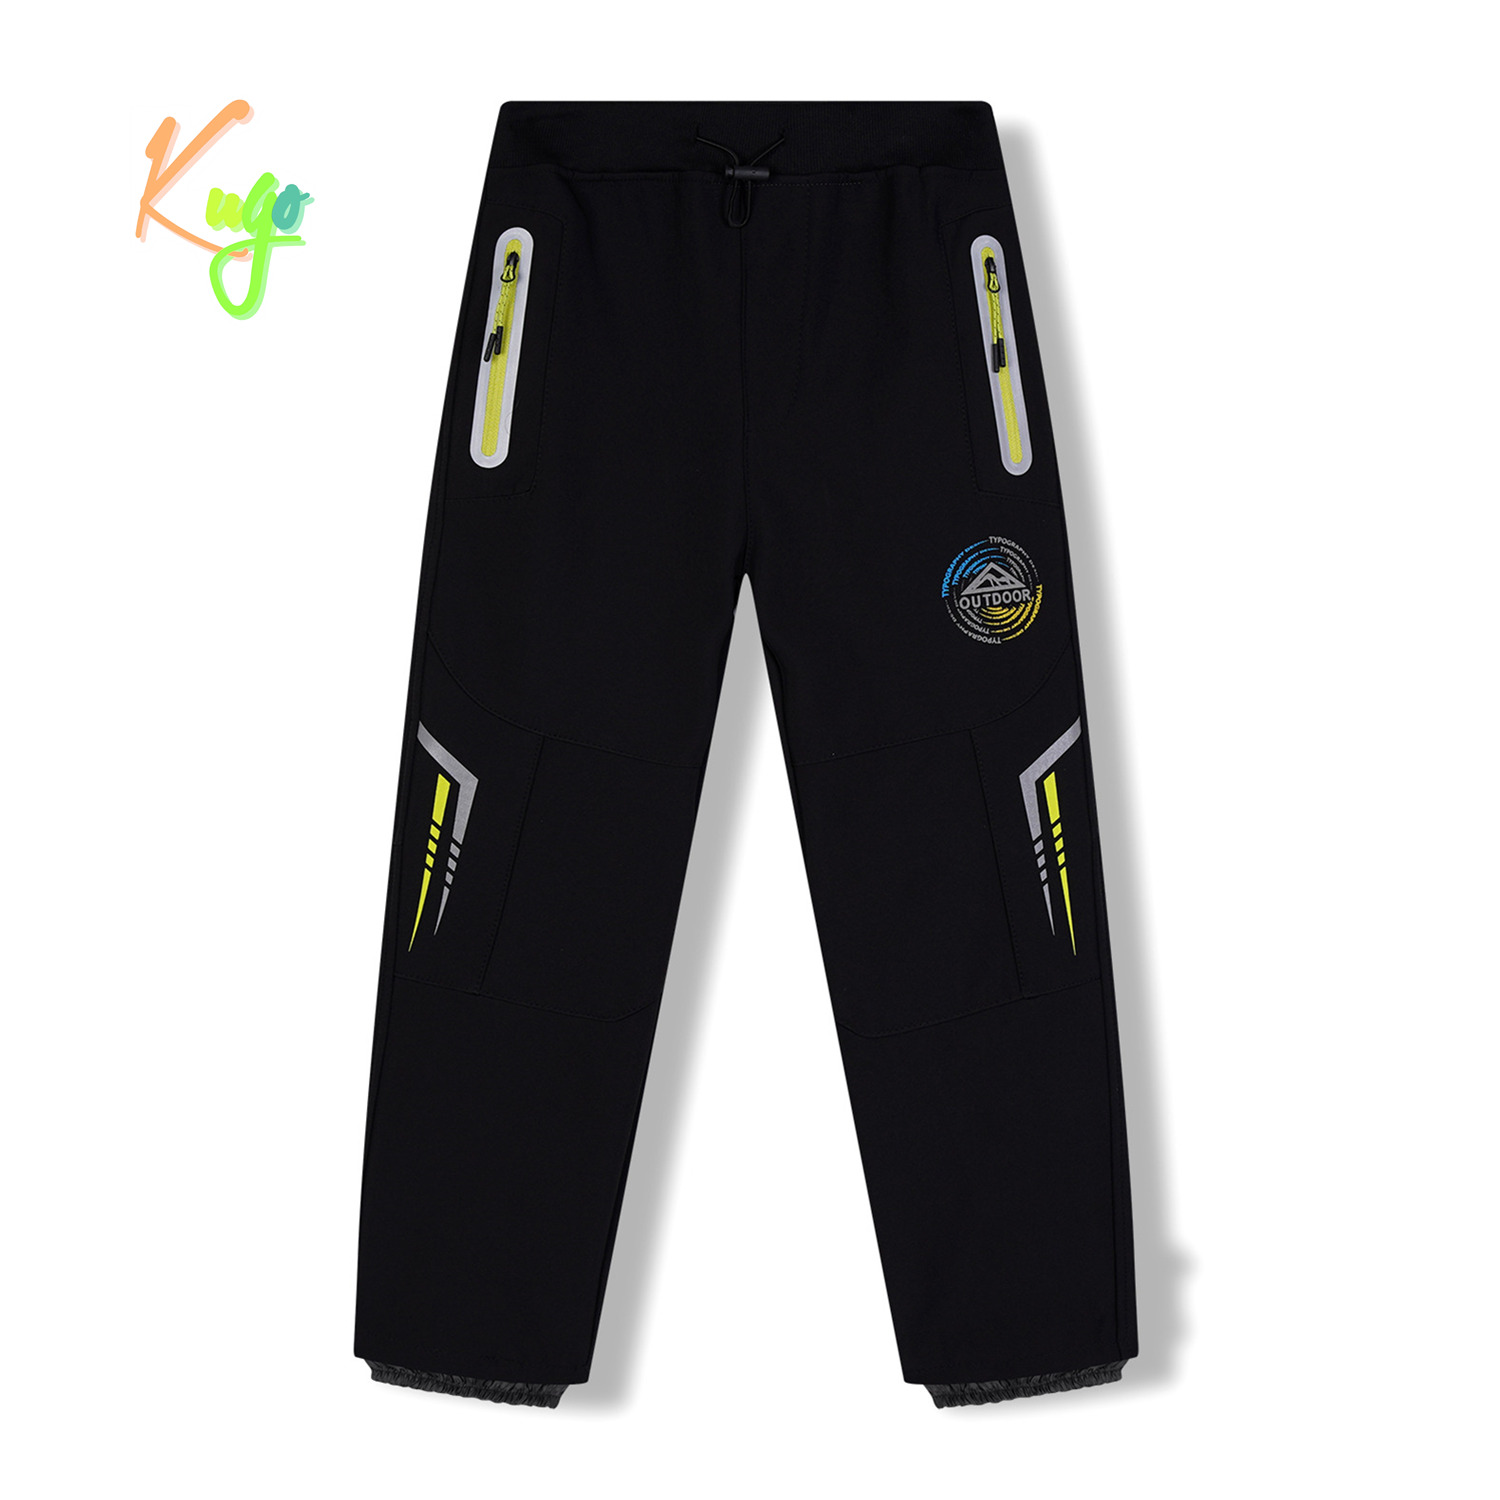 Chlapecké softshellové kalhoty, zateplené - KUGO HK5621, černá / signální zipy Barva: Černá, Velikost: 134